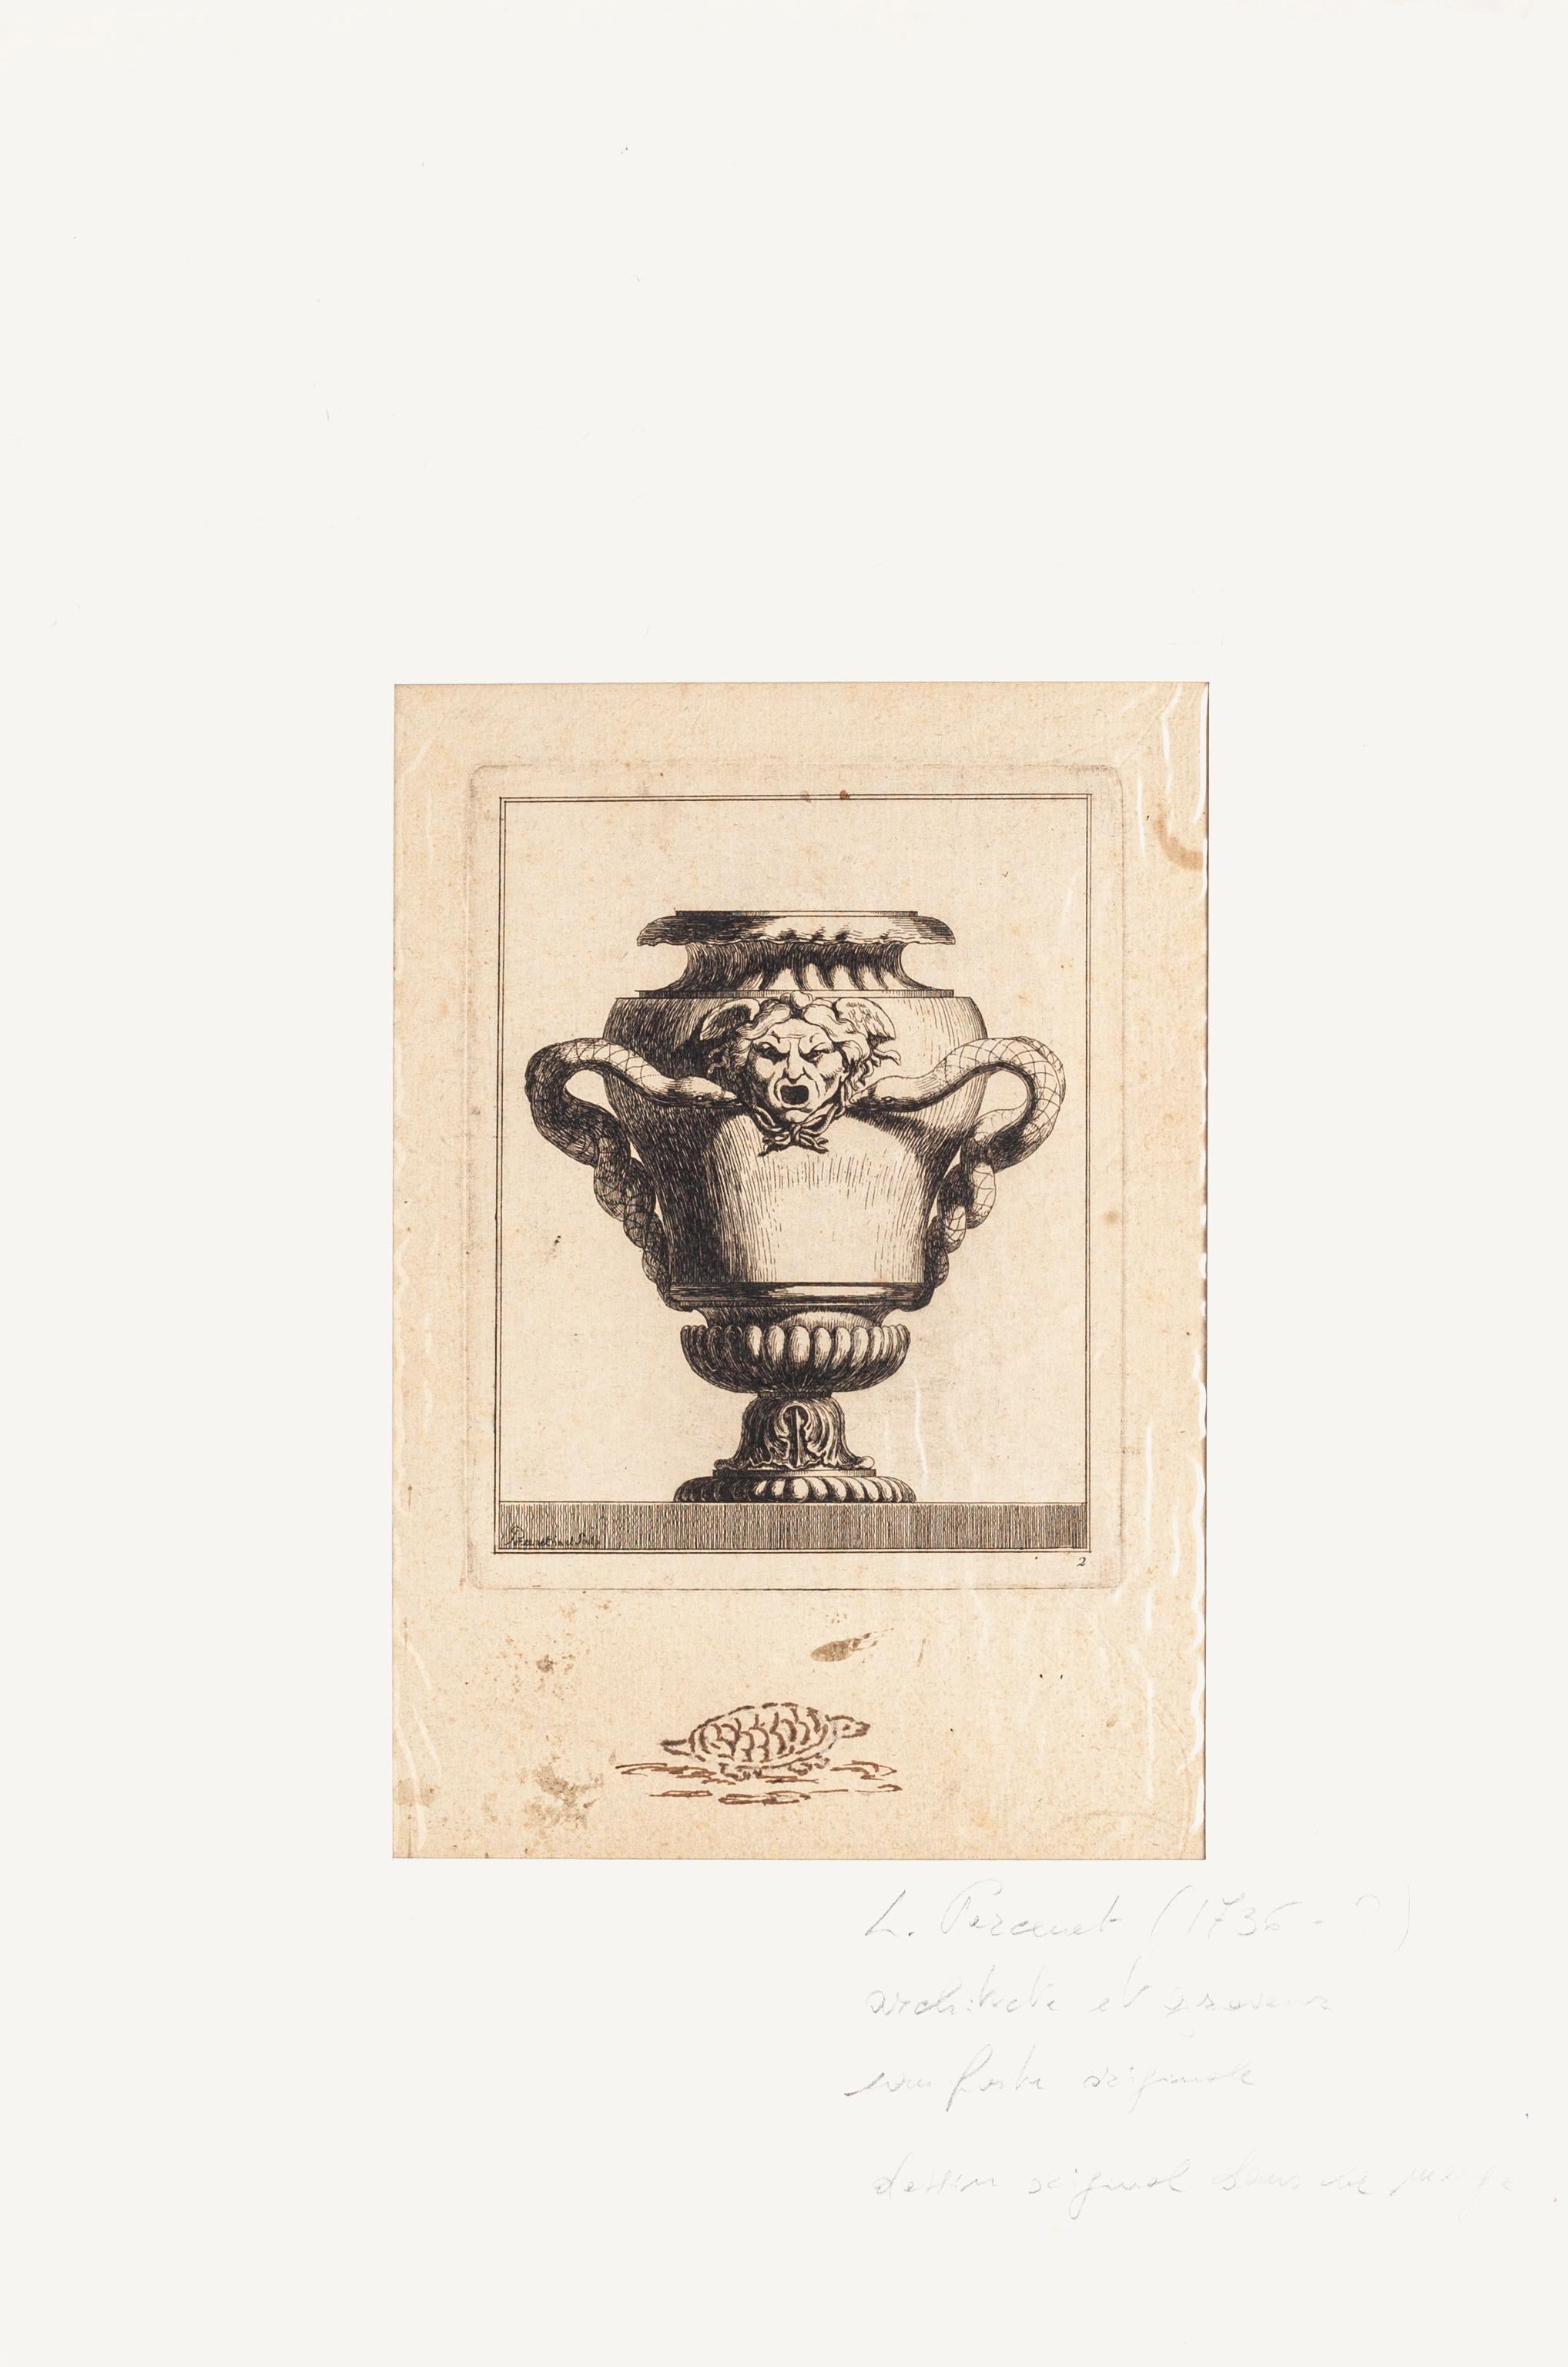 Création pour vase - gravure originale - fin du 18ème siècle - Print de Louis Percenet